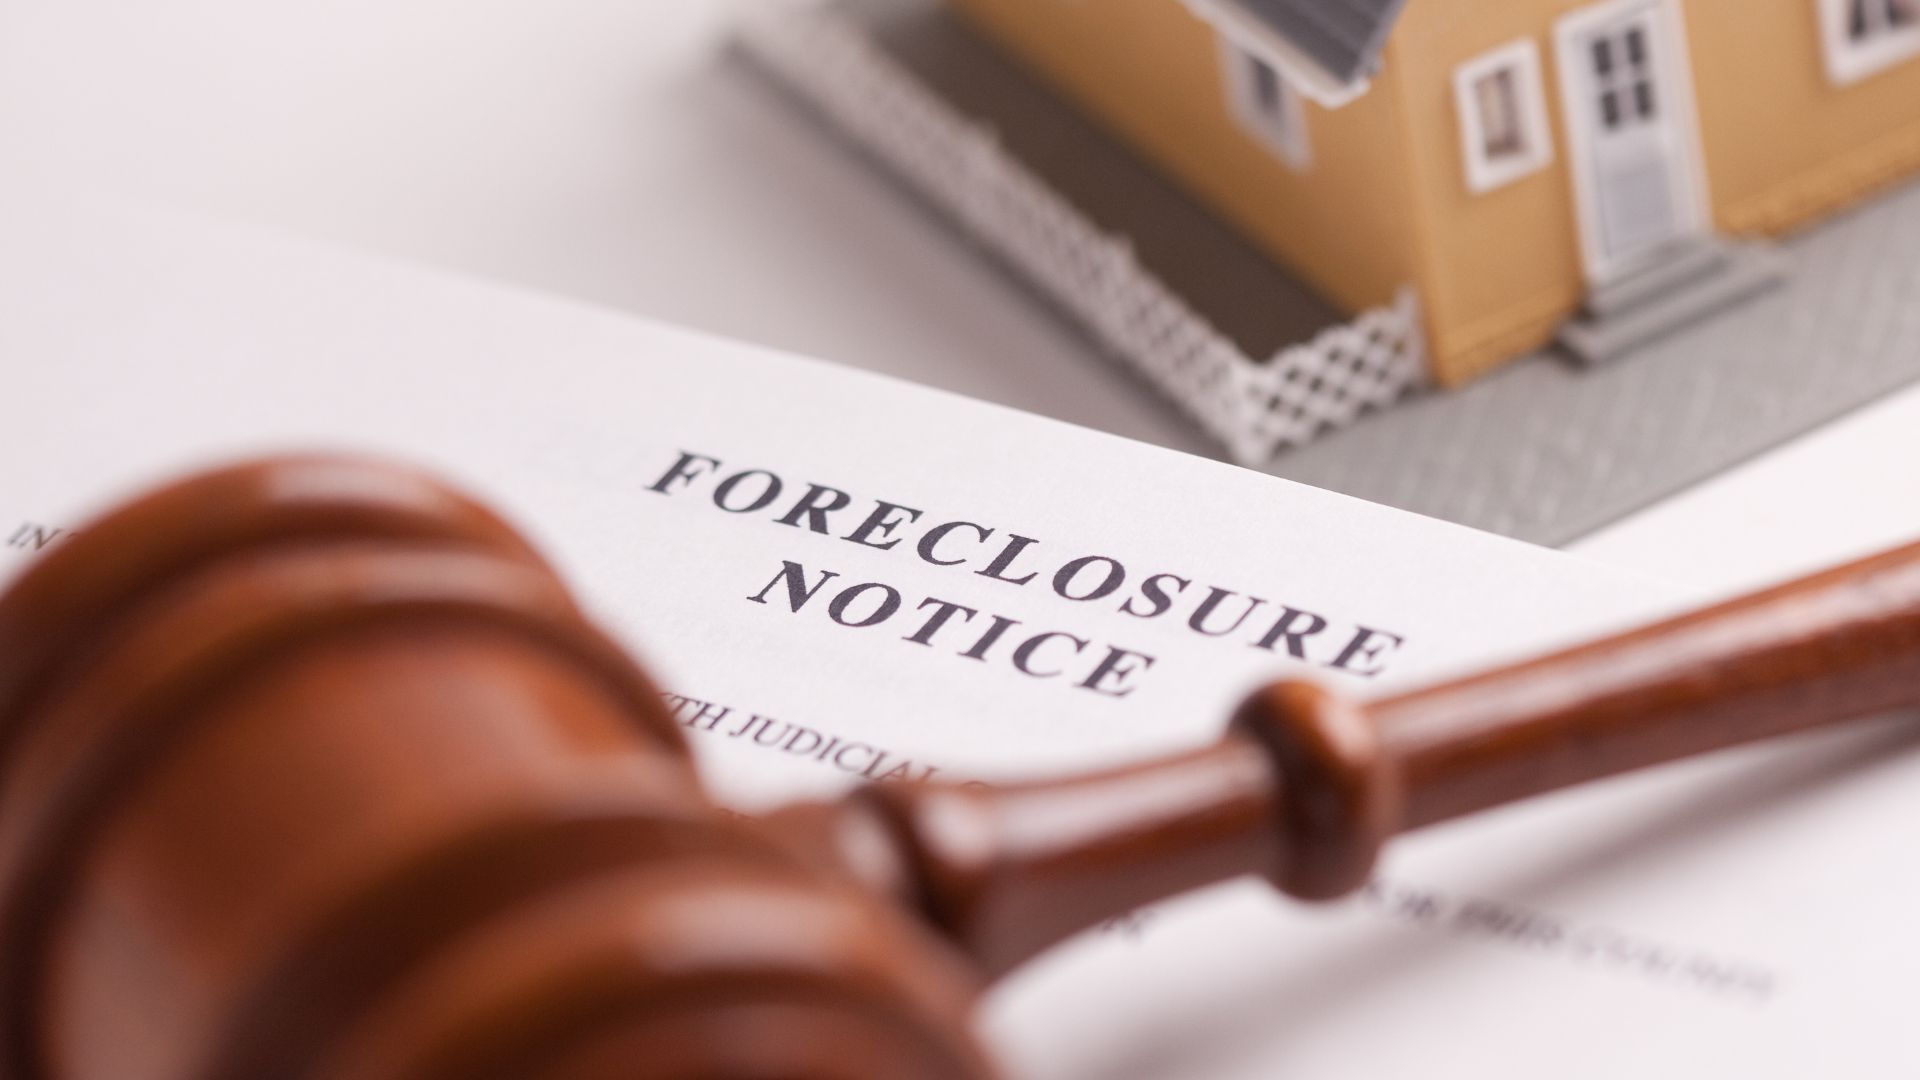 Mortgage foreclosure document